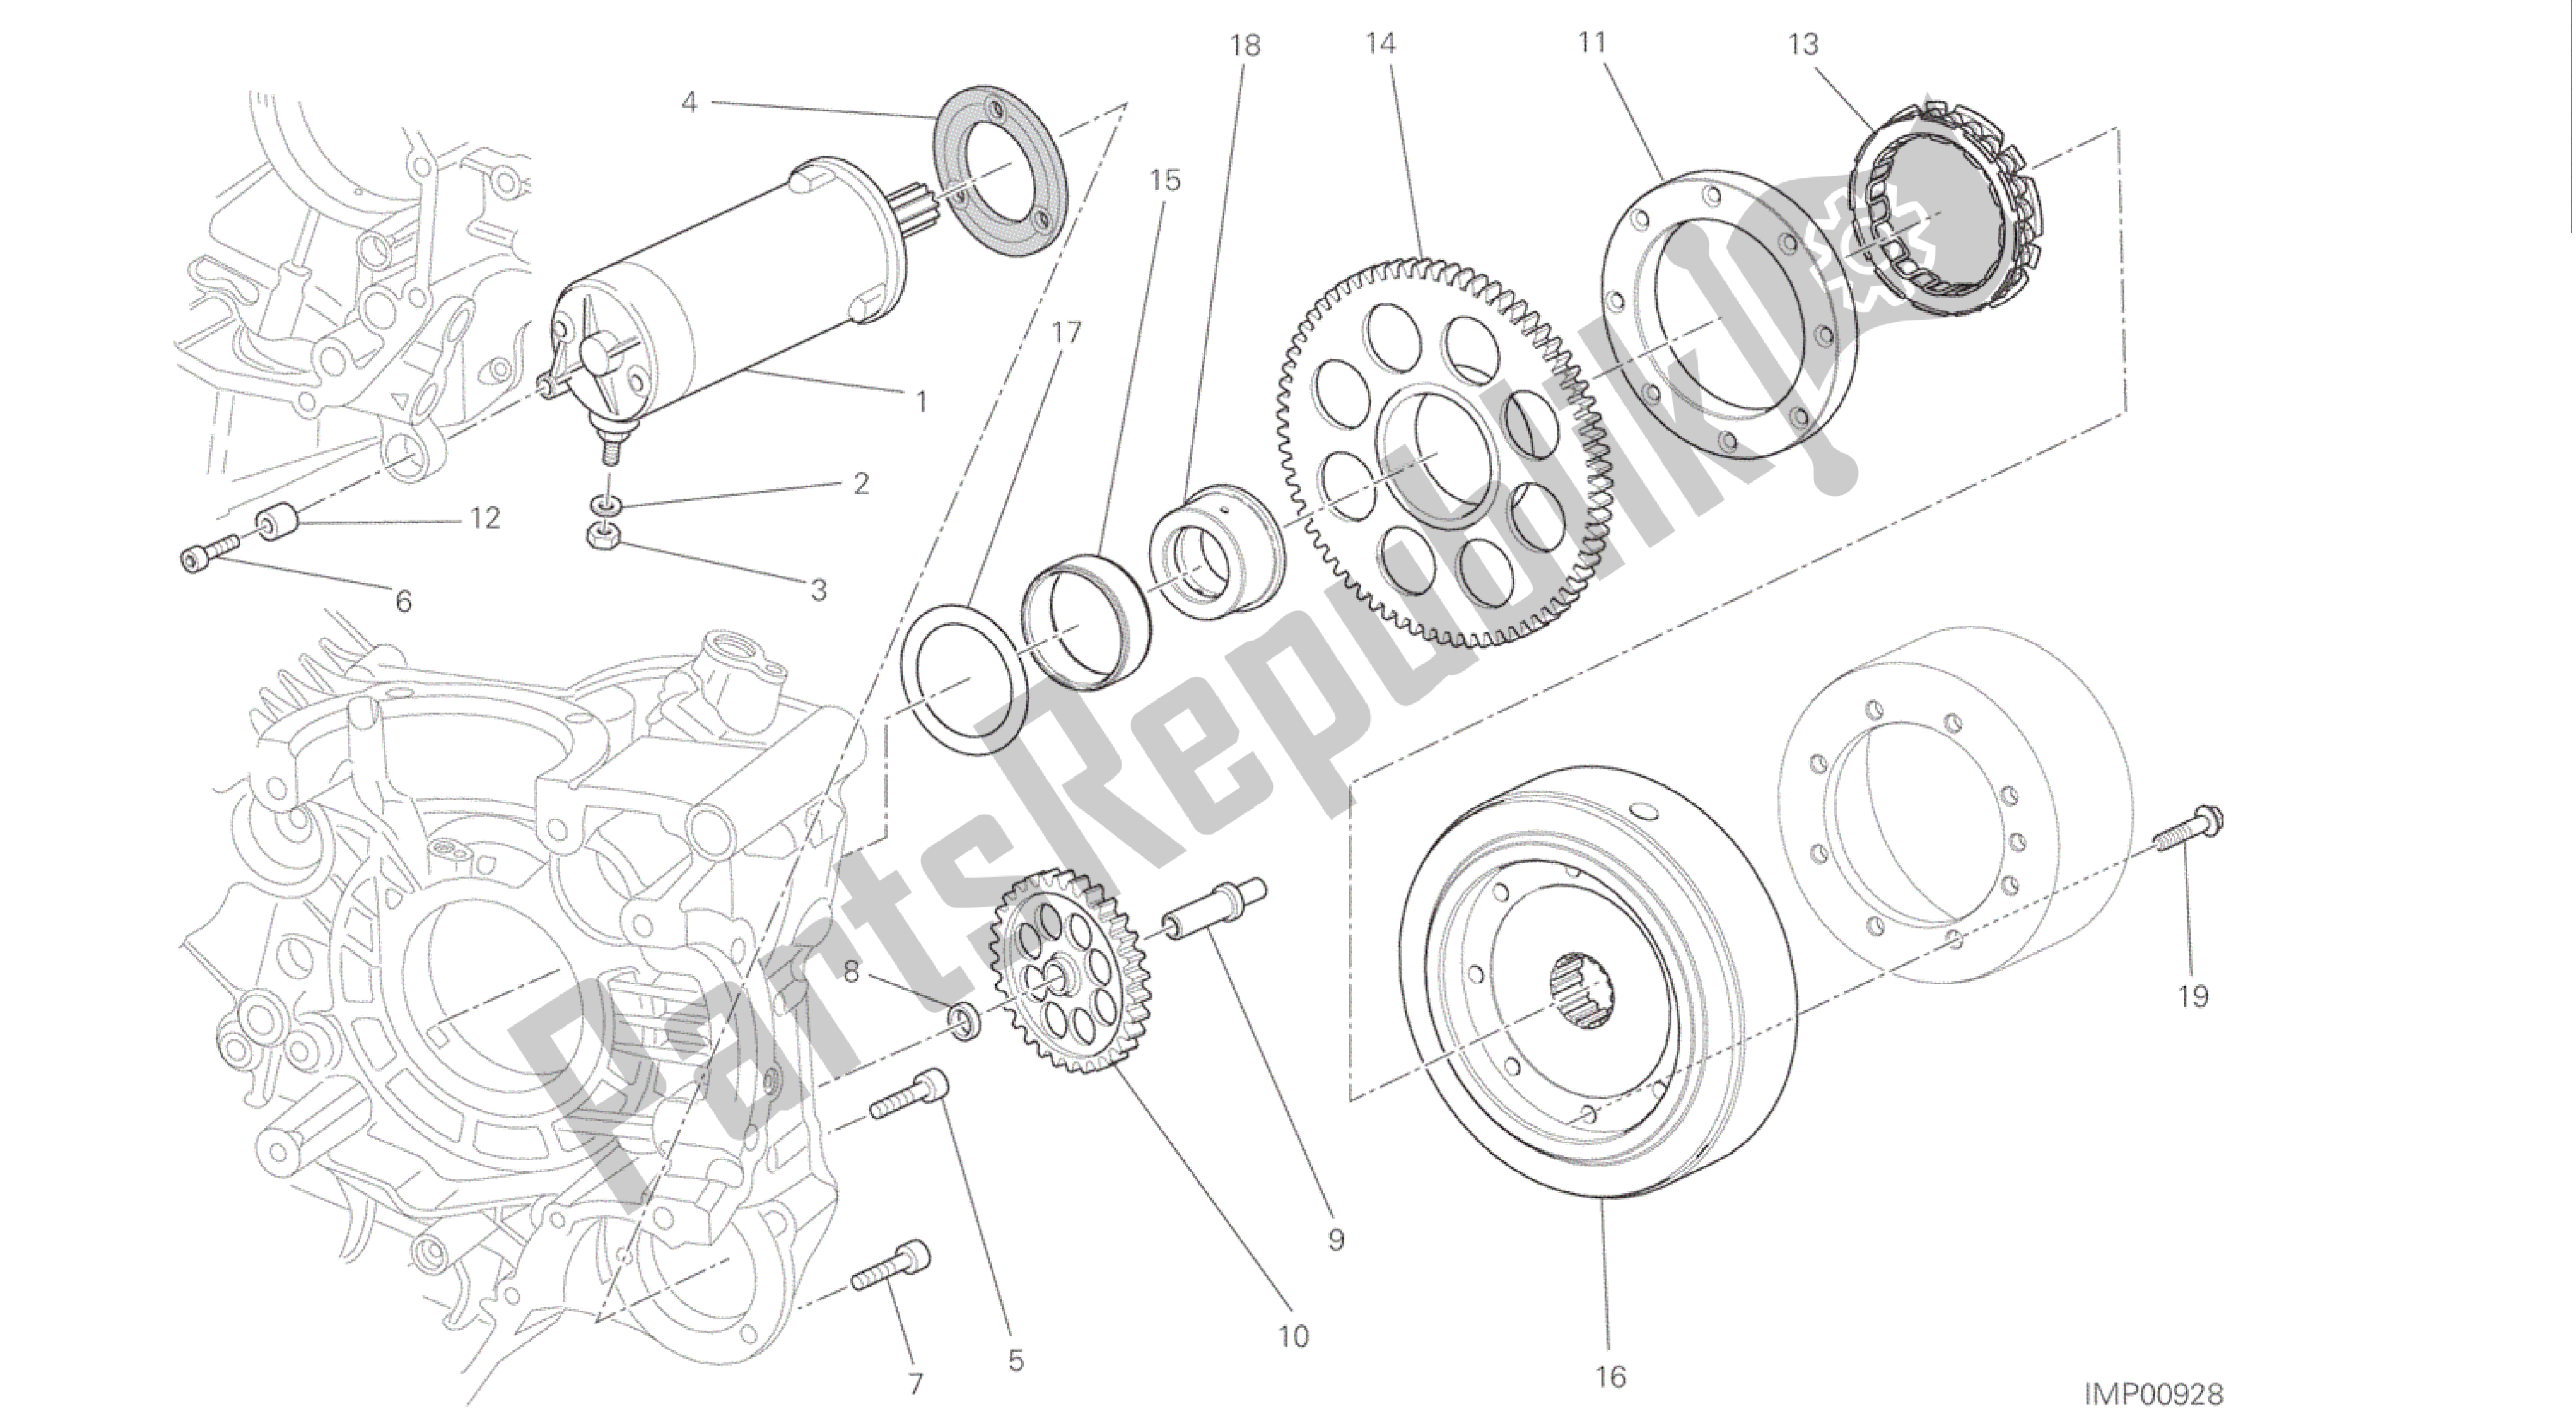 Todas las partes para Dibujo 012 - Motor De Grupo De Arranque Eléctrico Y Encendido [mod: M 1200] de Ducati Monster 1200 2016